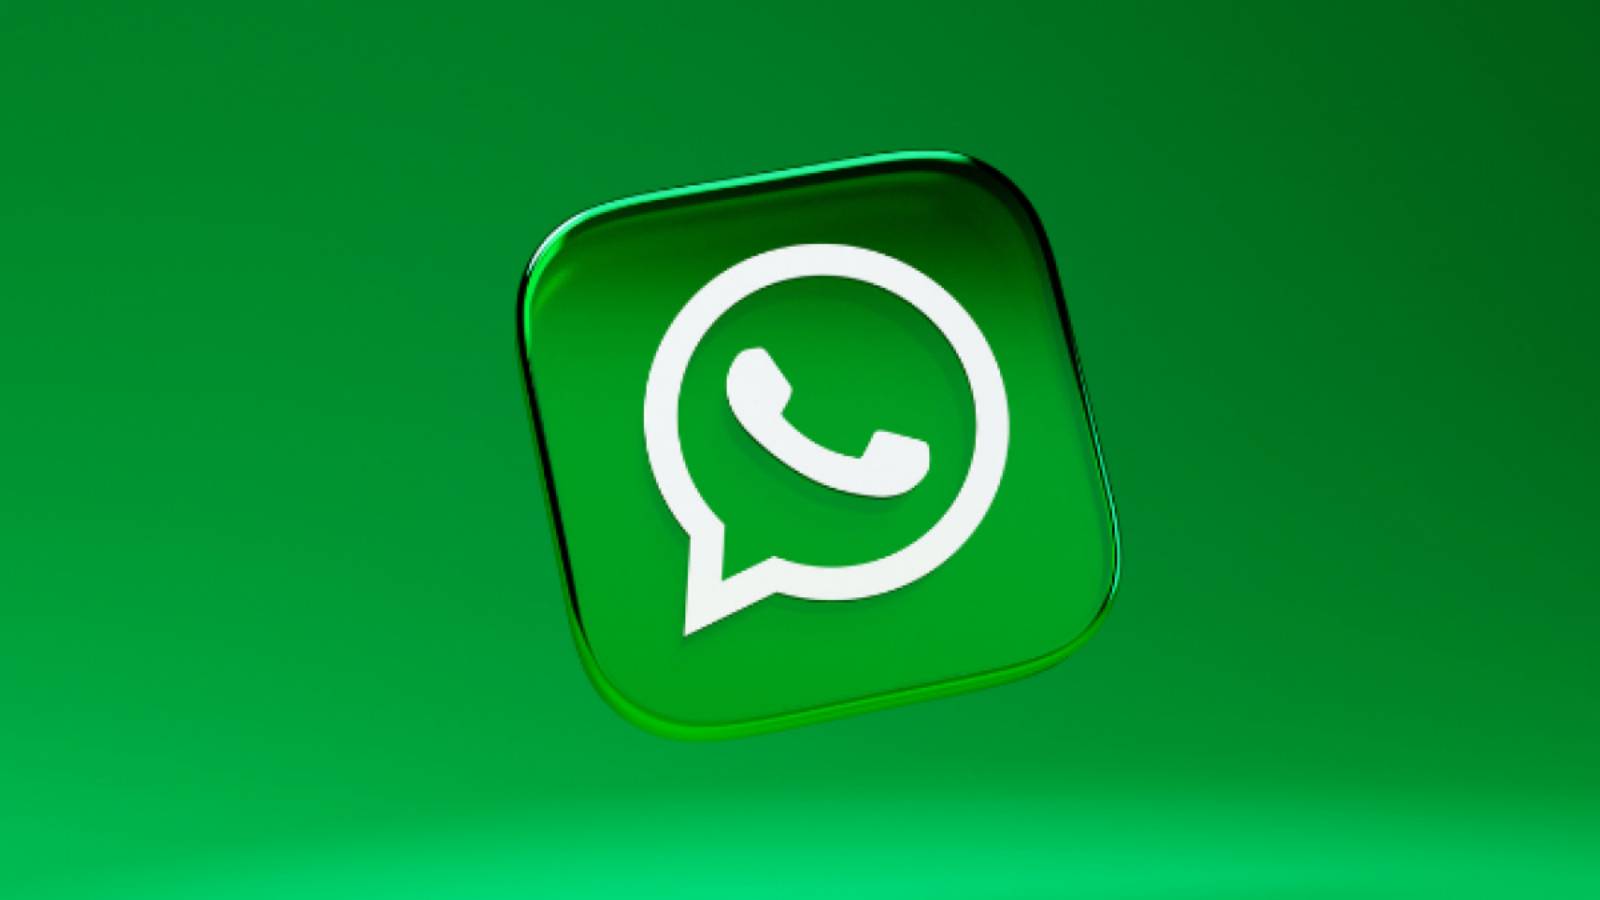 WhatsApp-ongelma turhauttaa satojen miljoonien ihmisten puhelimia